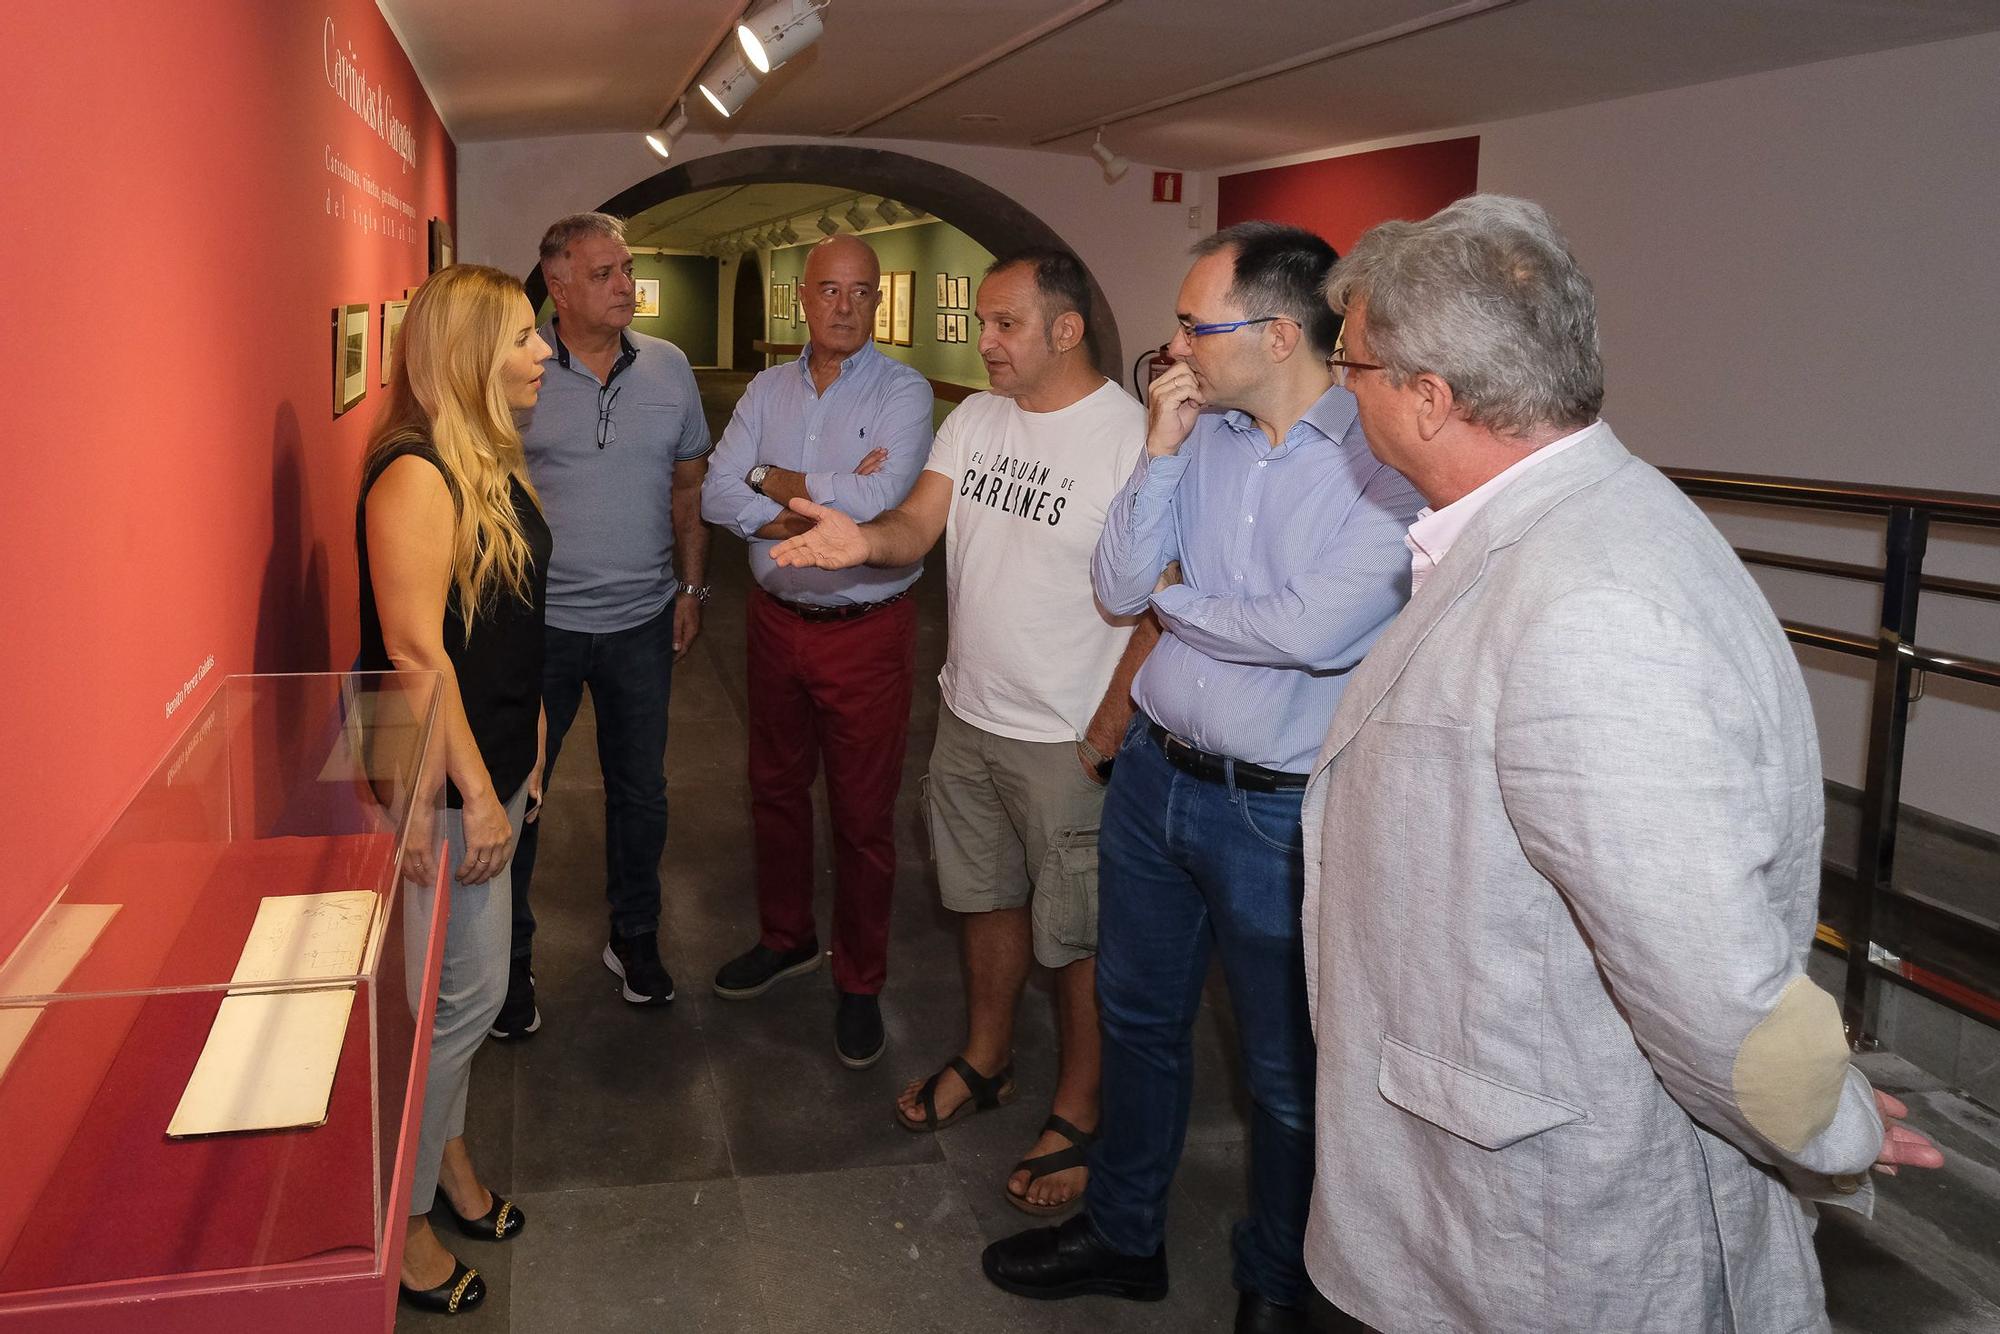 Exposición ‘Cariñetas & Gargarotes’ en la sala Manolo Millares-Elvireta Escobio del Cicca